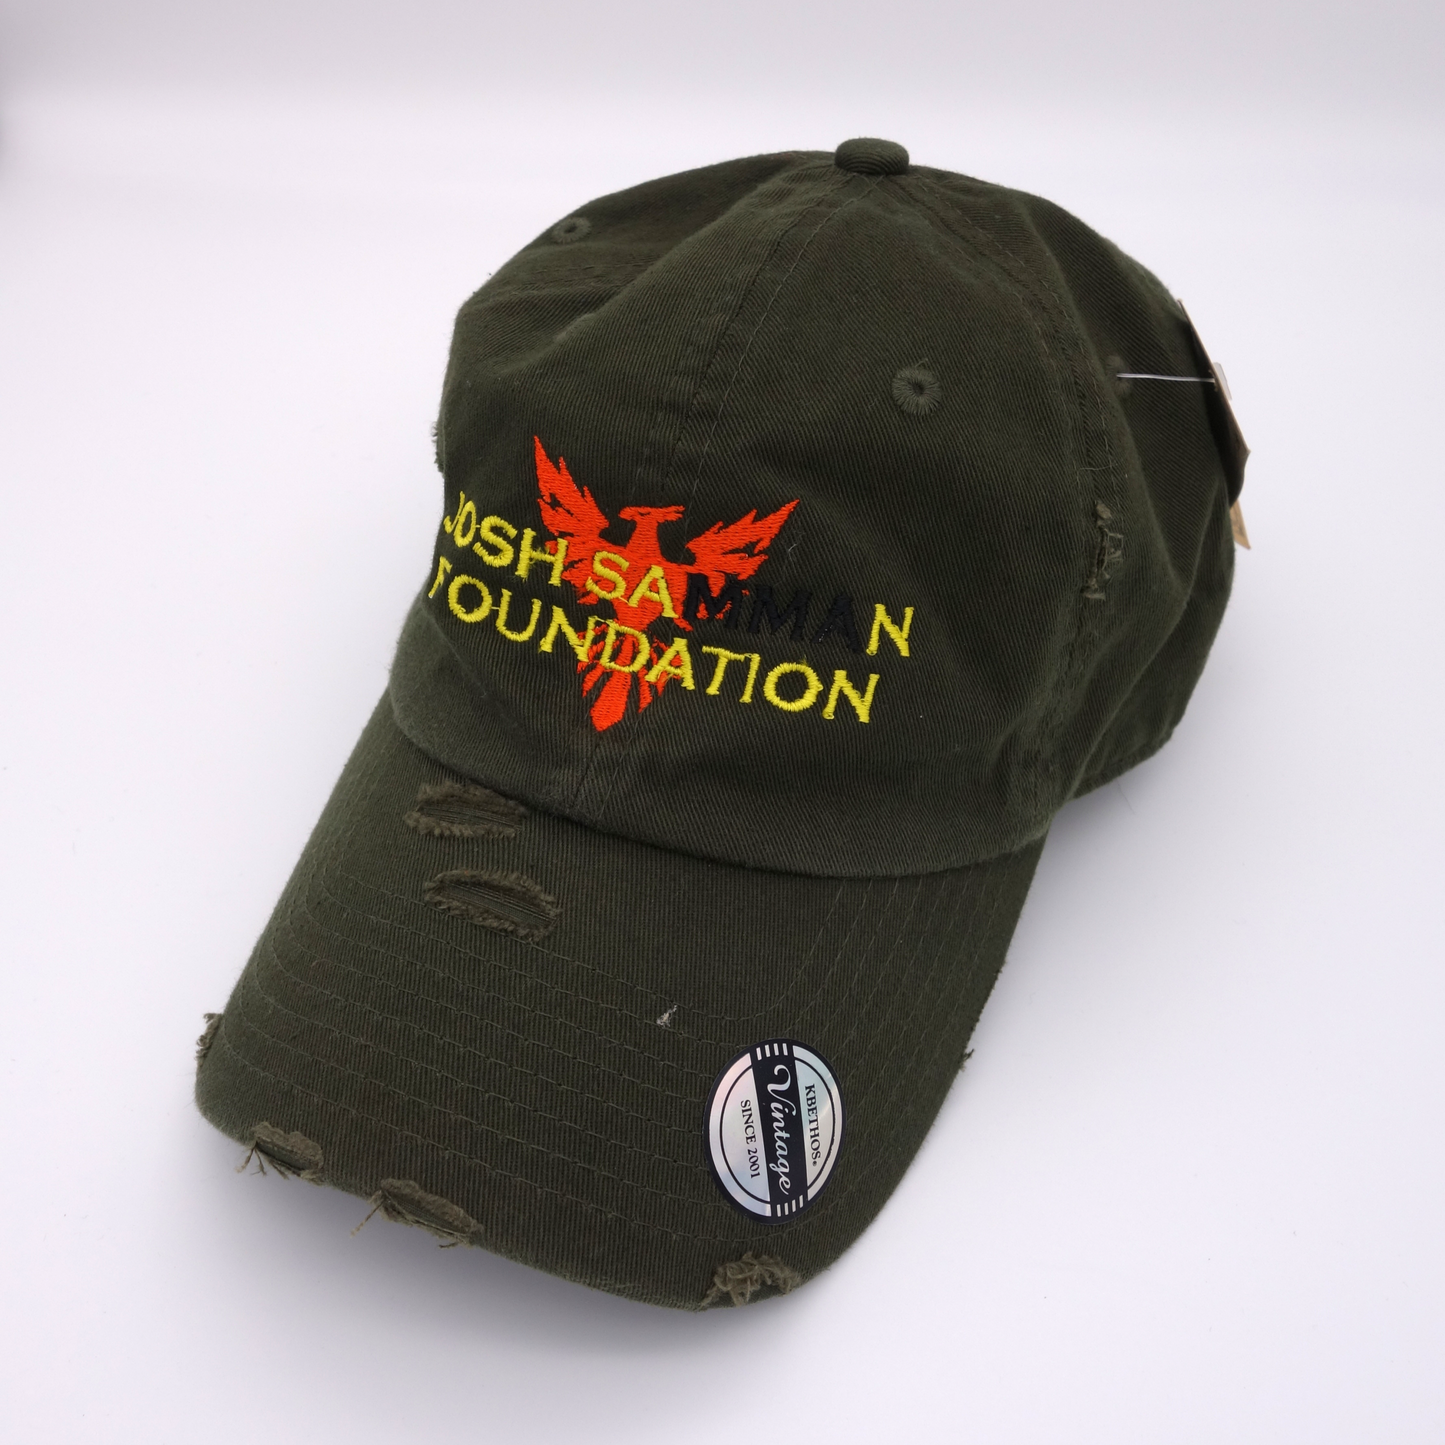 Josh Samman Foundation Hat